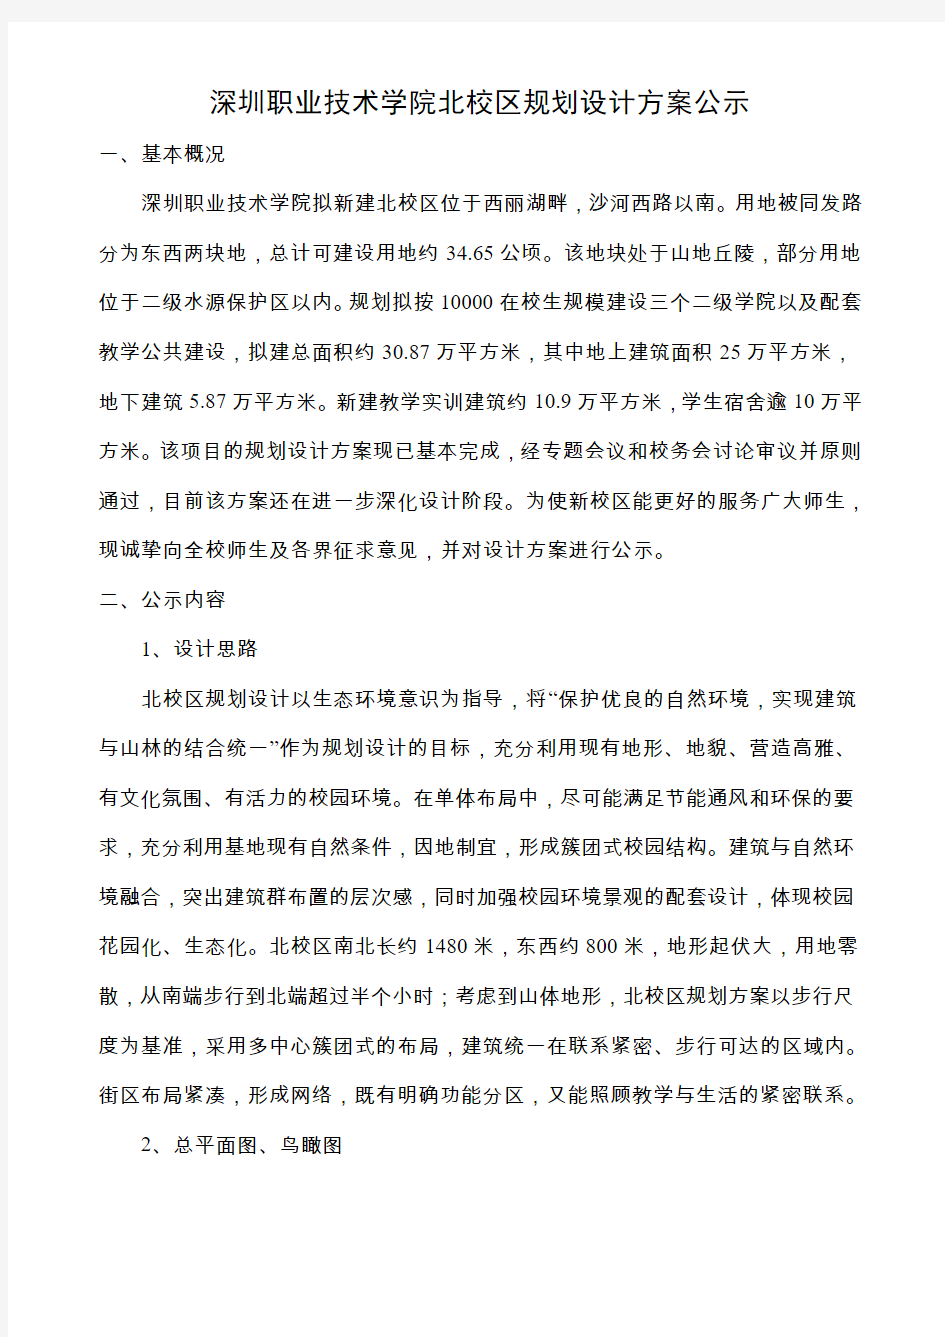 深圳职业技术学院北校区规划设计方案公示